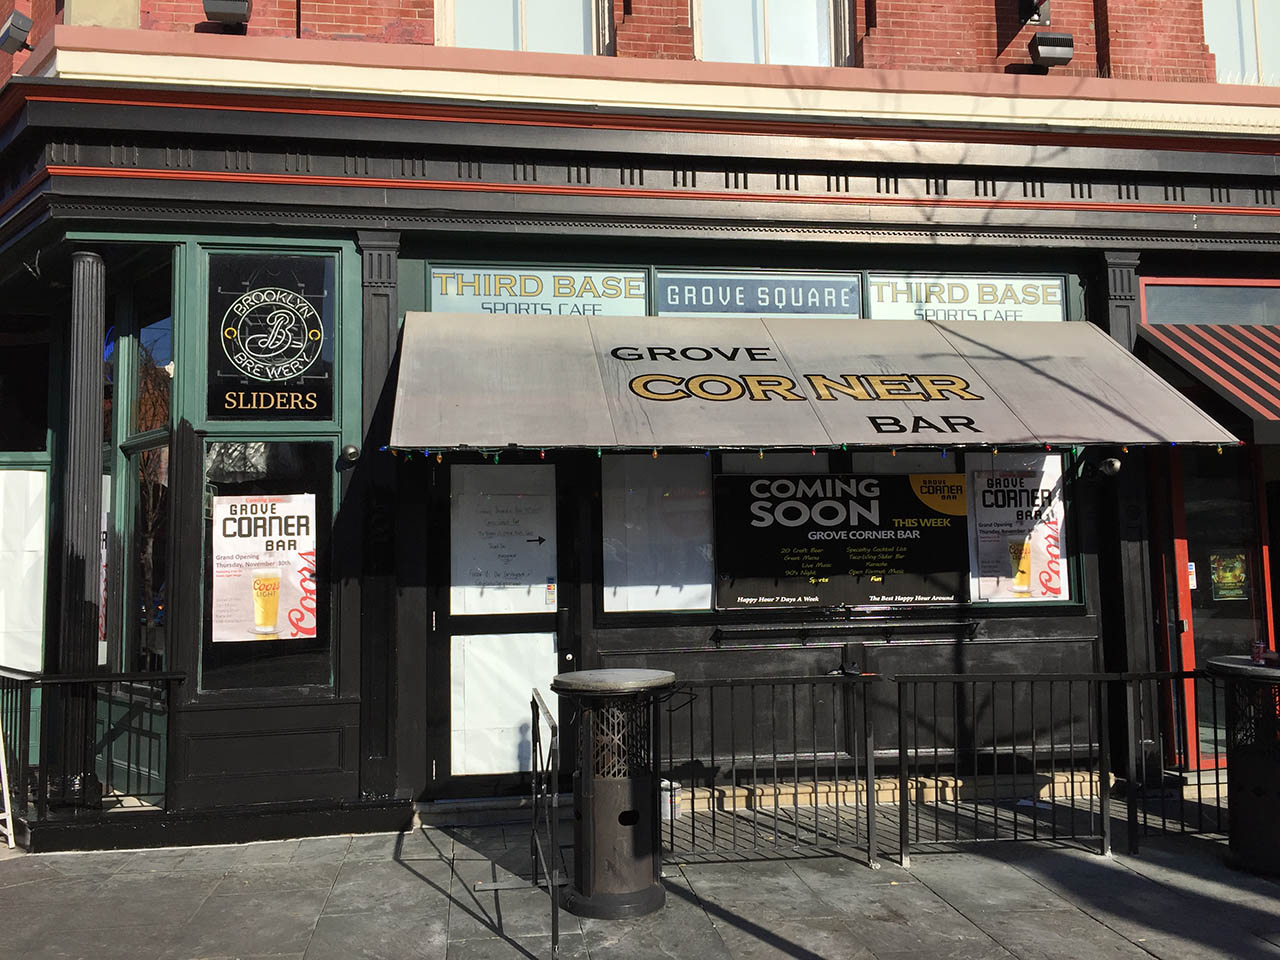 Pelgrim ondersteuning Medicinaal Re-Branded 'Grove Corner Bar' Opens Today in Jersey City